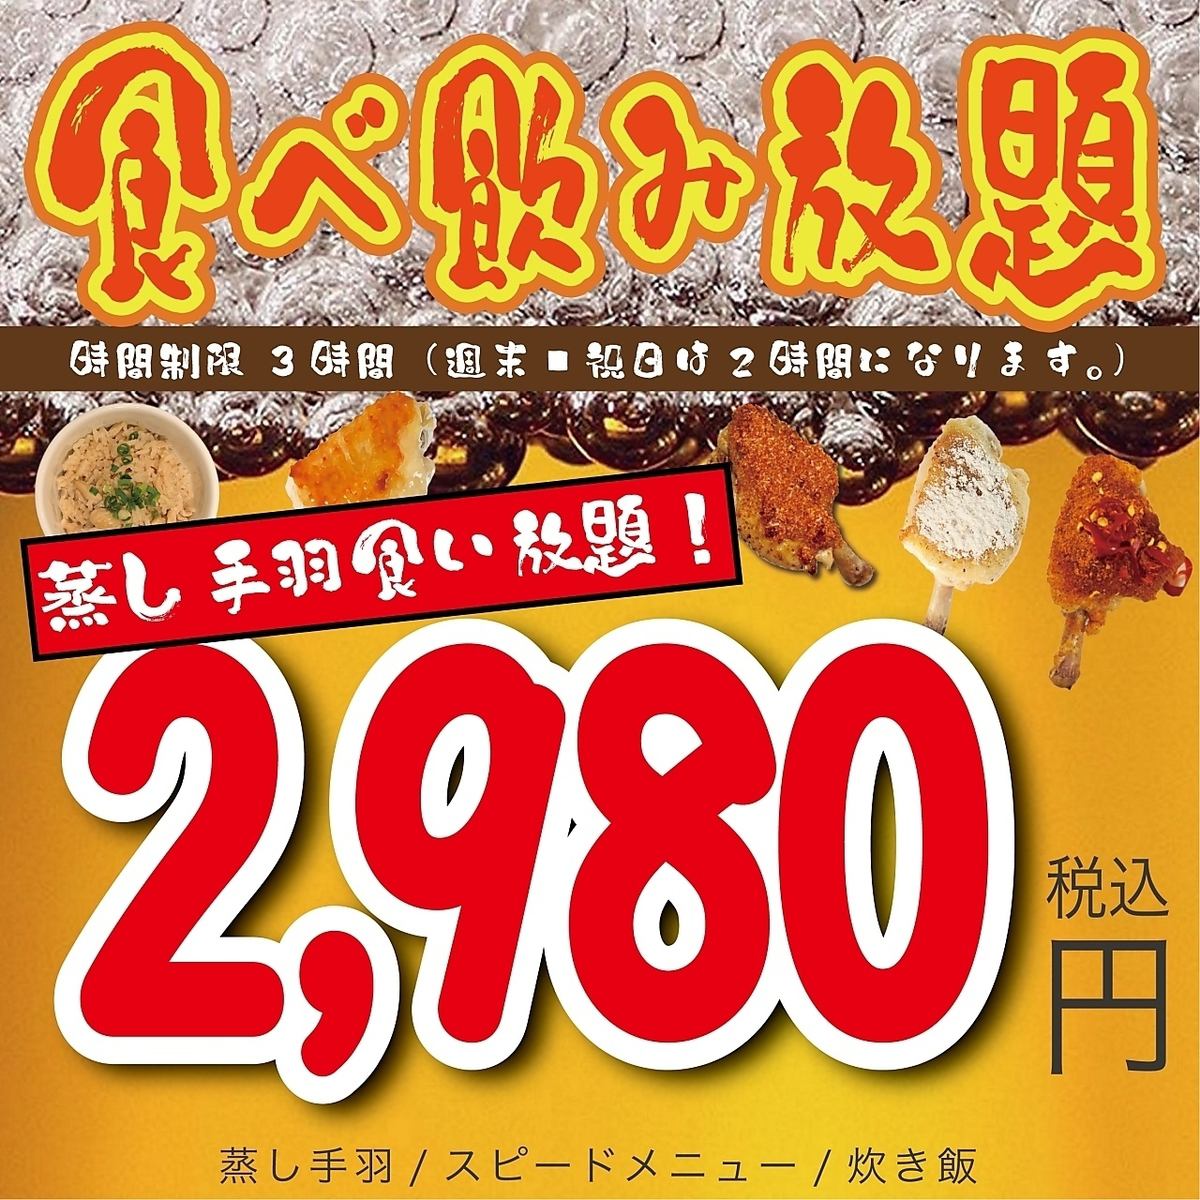 包括蒸鸡翅、饺子、点菜在内的无限畅饮套餐2,980日元起！